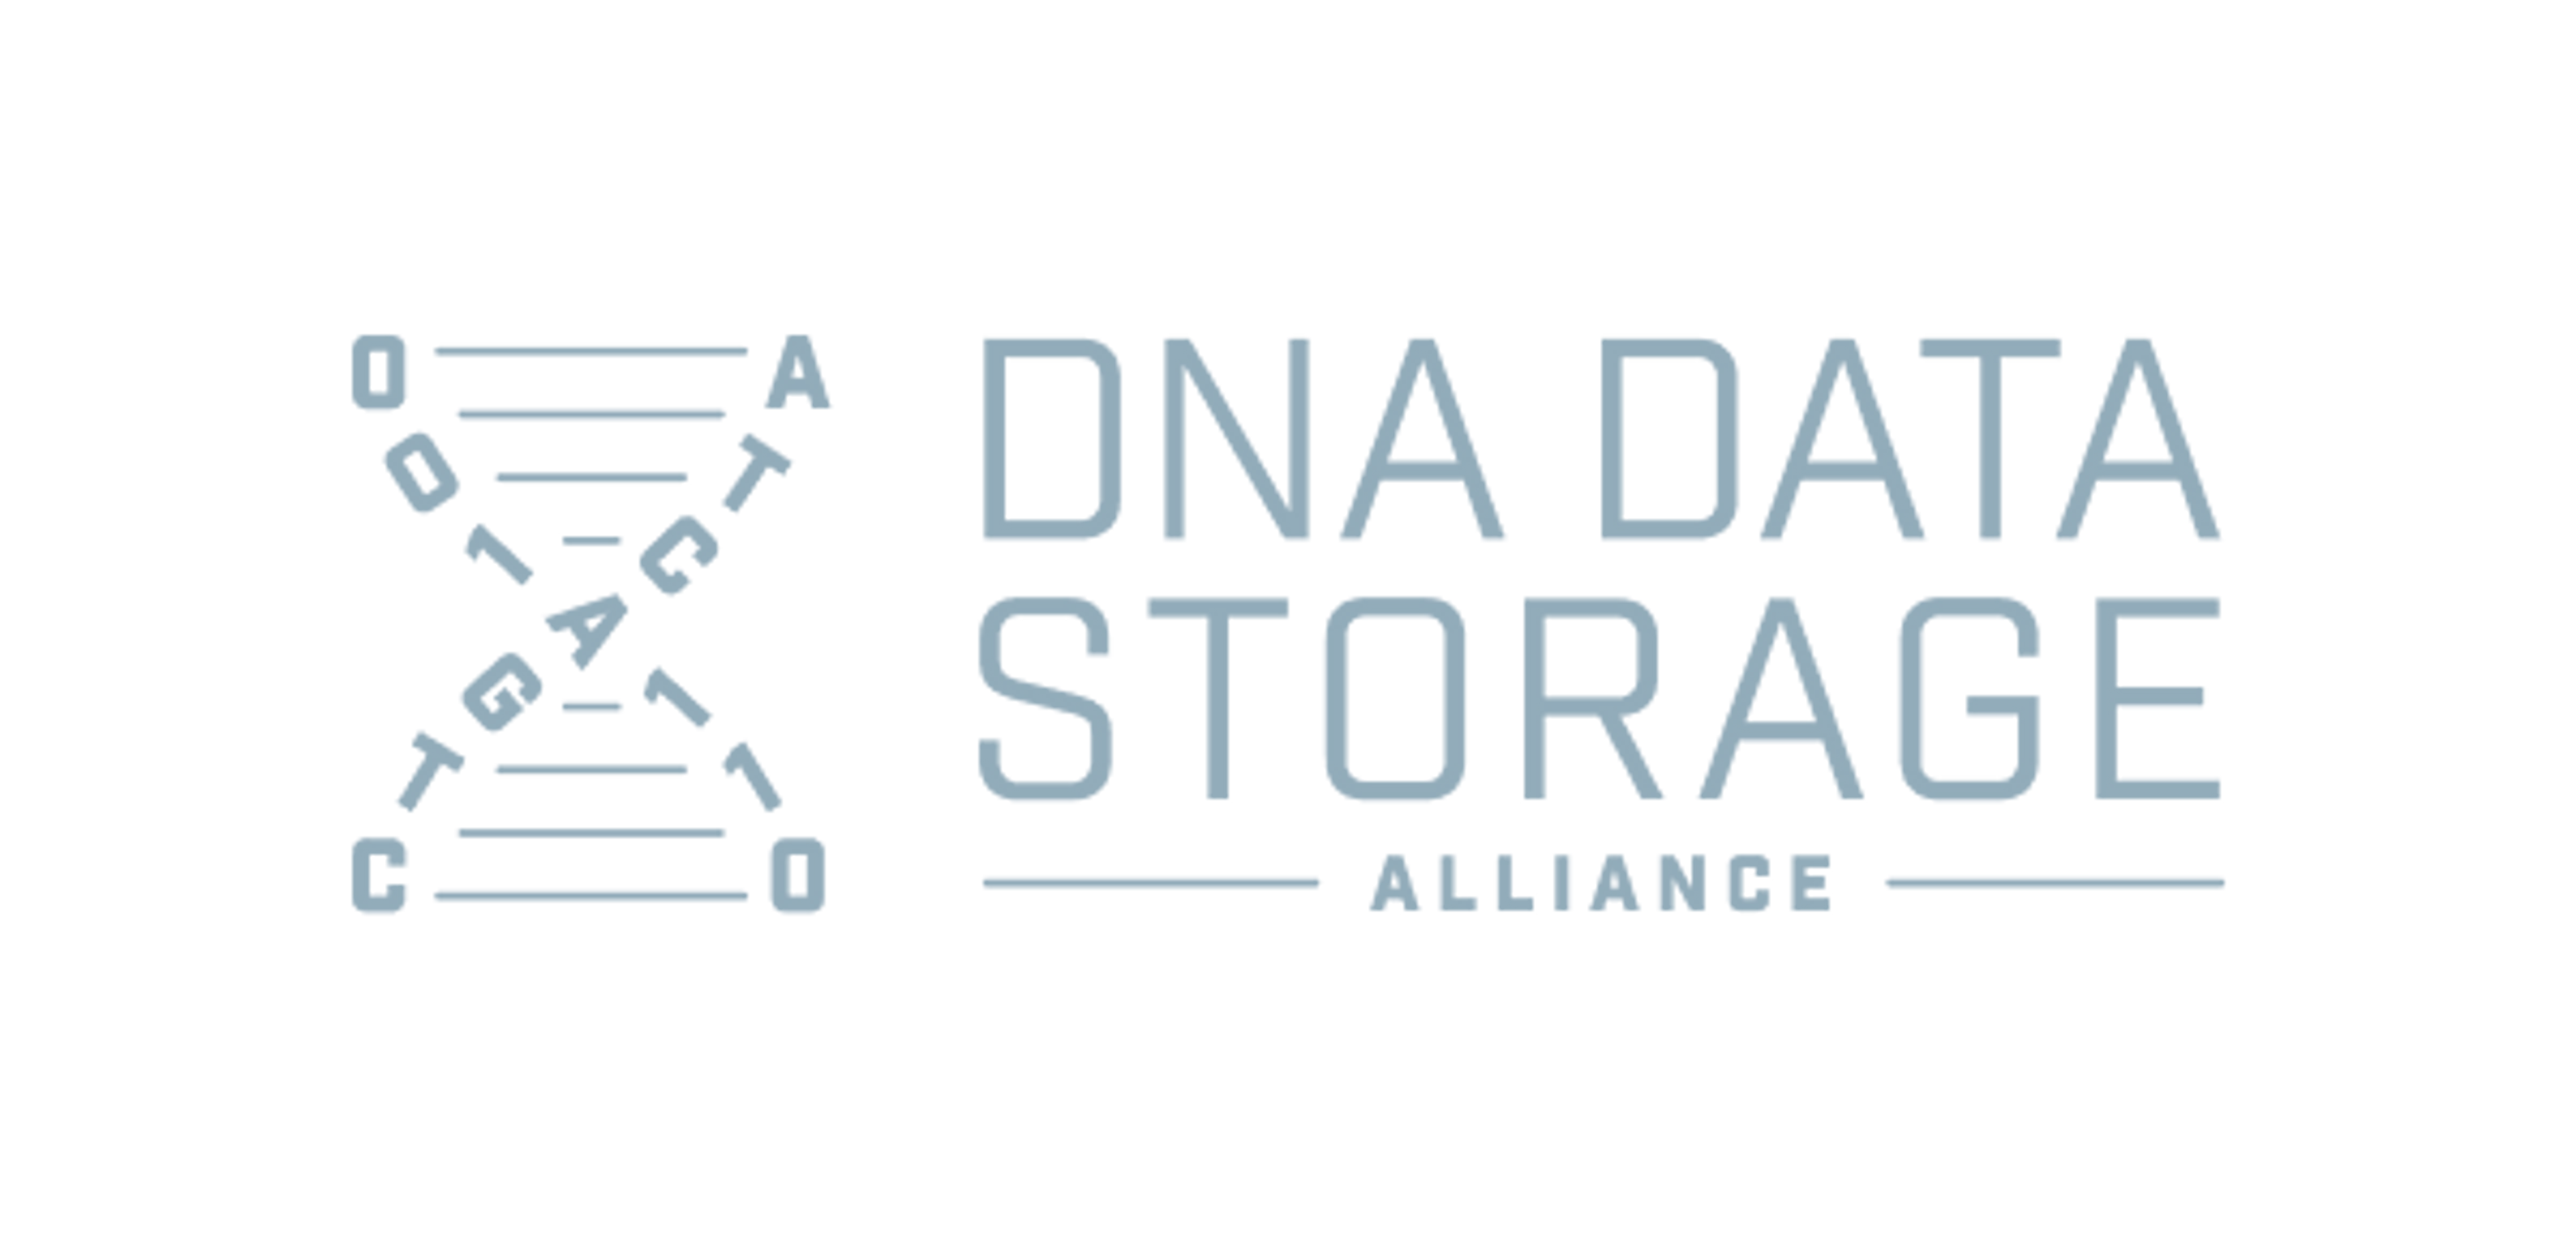 DNA Data Storage Alliance